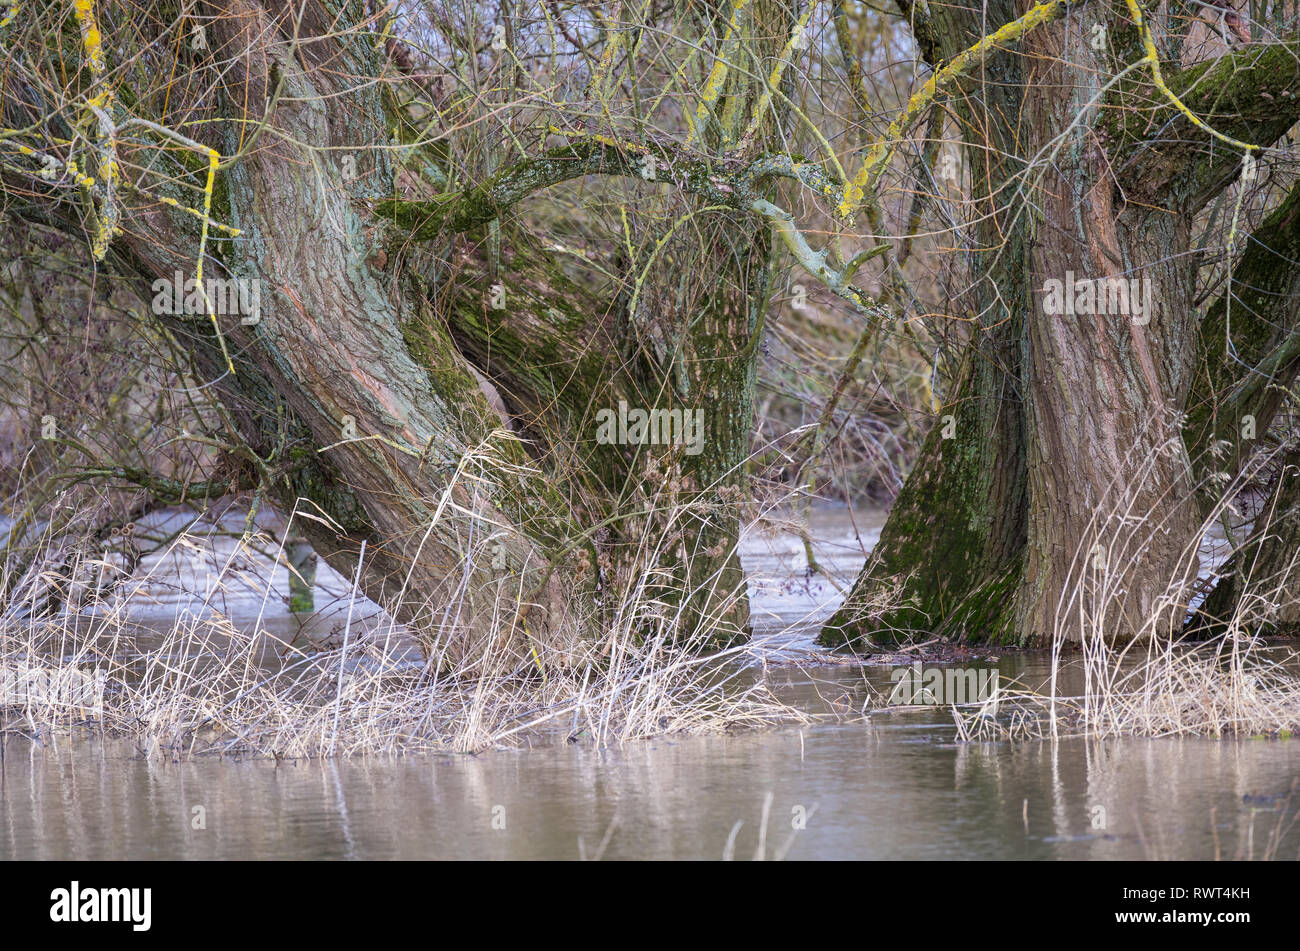 Überschwemmung - Bäume am Flussufer der Lahn Foto Stock